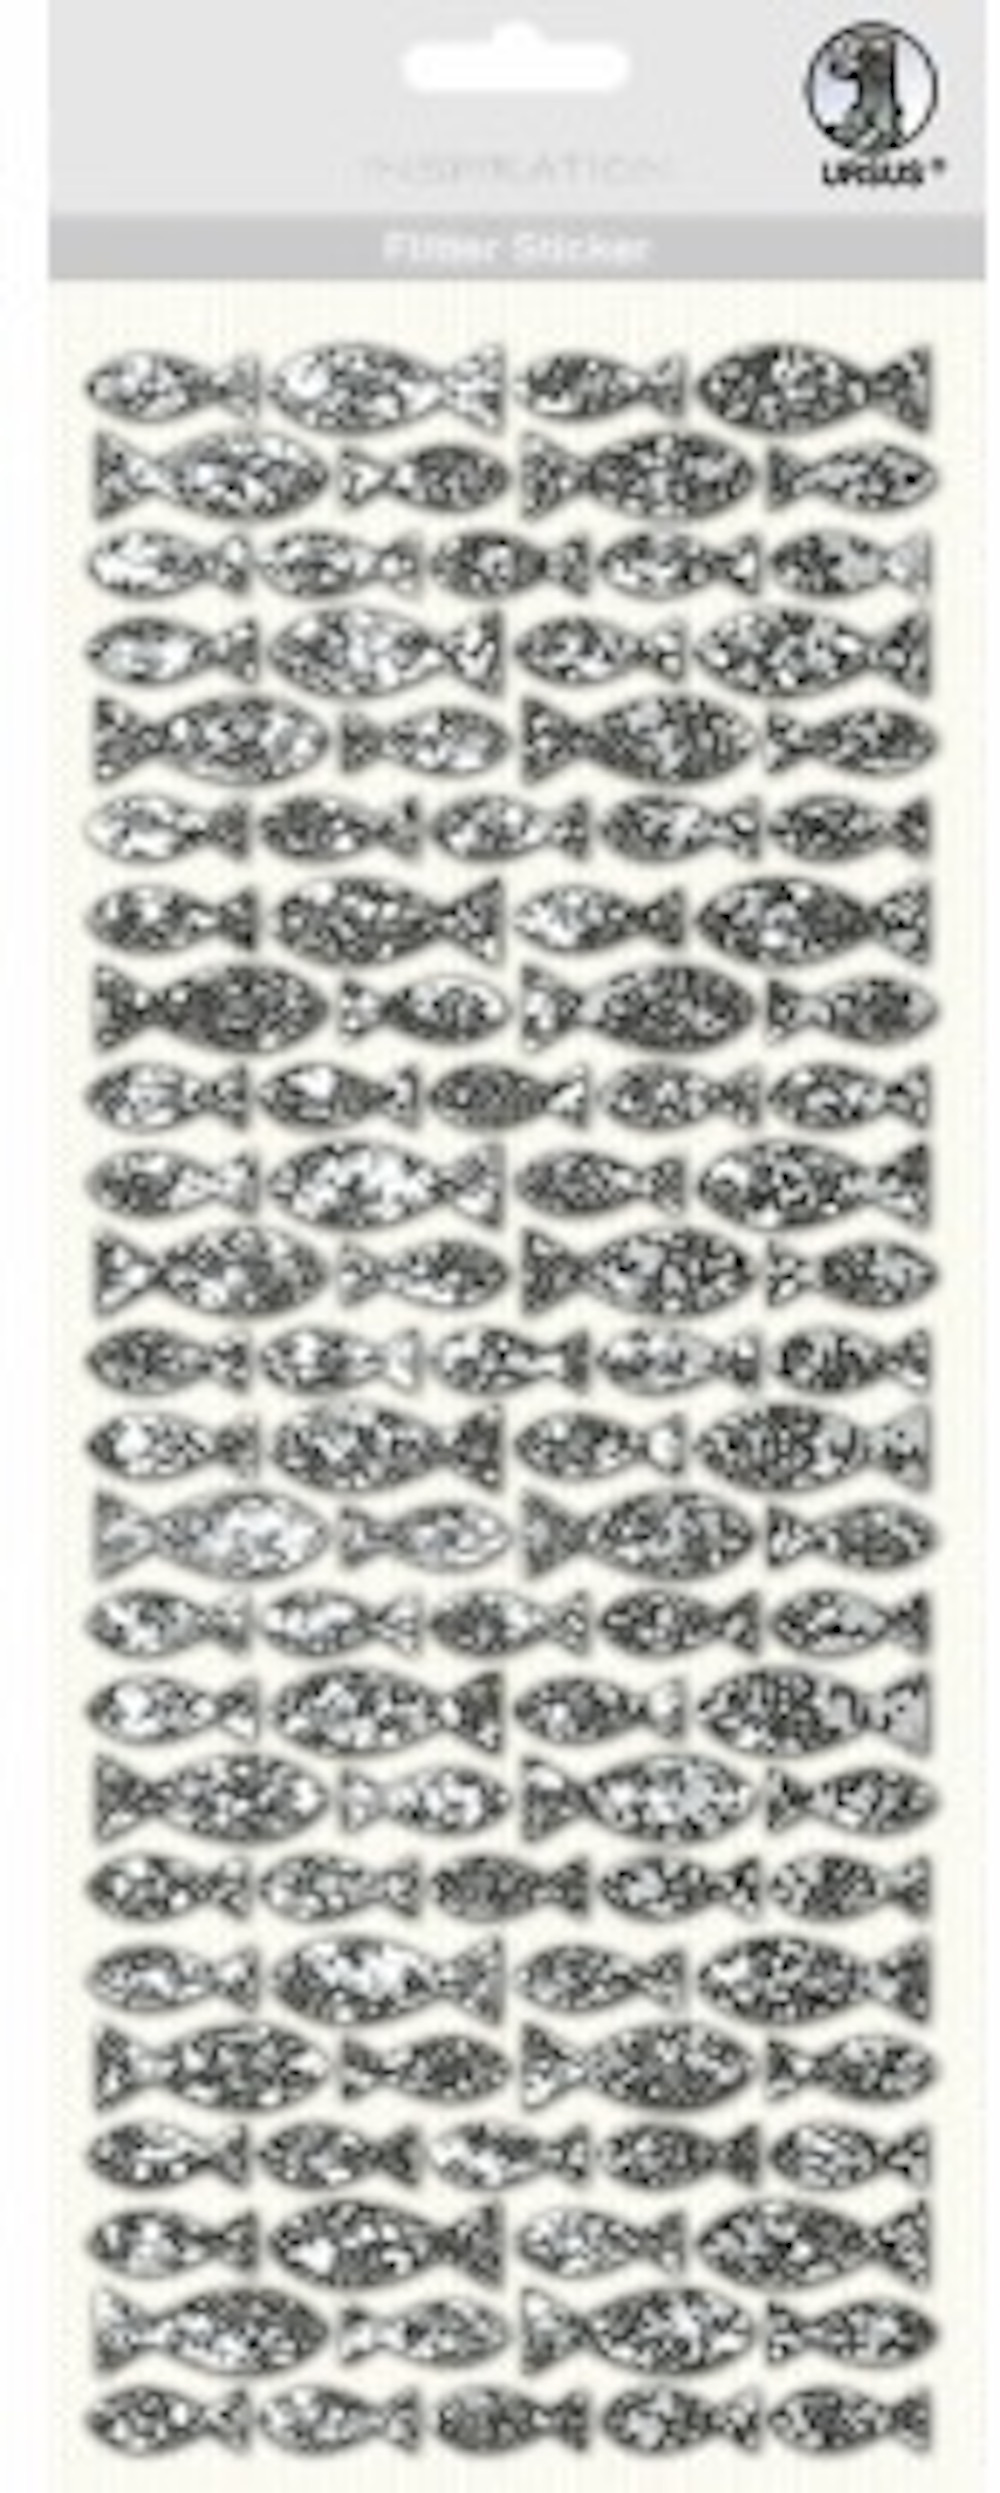 Flitter Sticker Fische, 1 Blatt Folienstoff-Sticker, ca. 12 x 29 cm, selbstklebend, silber